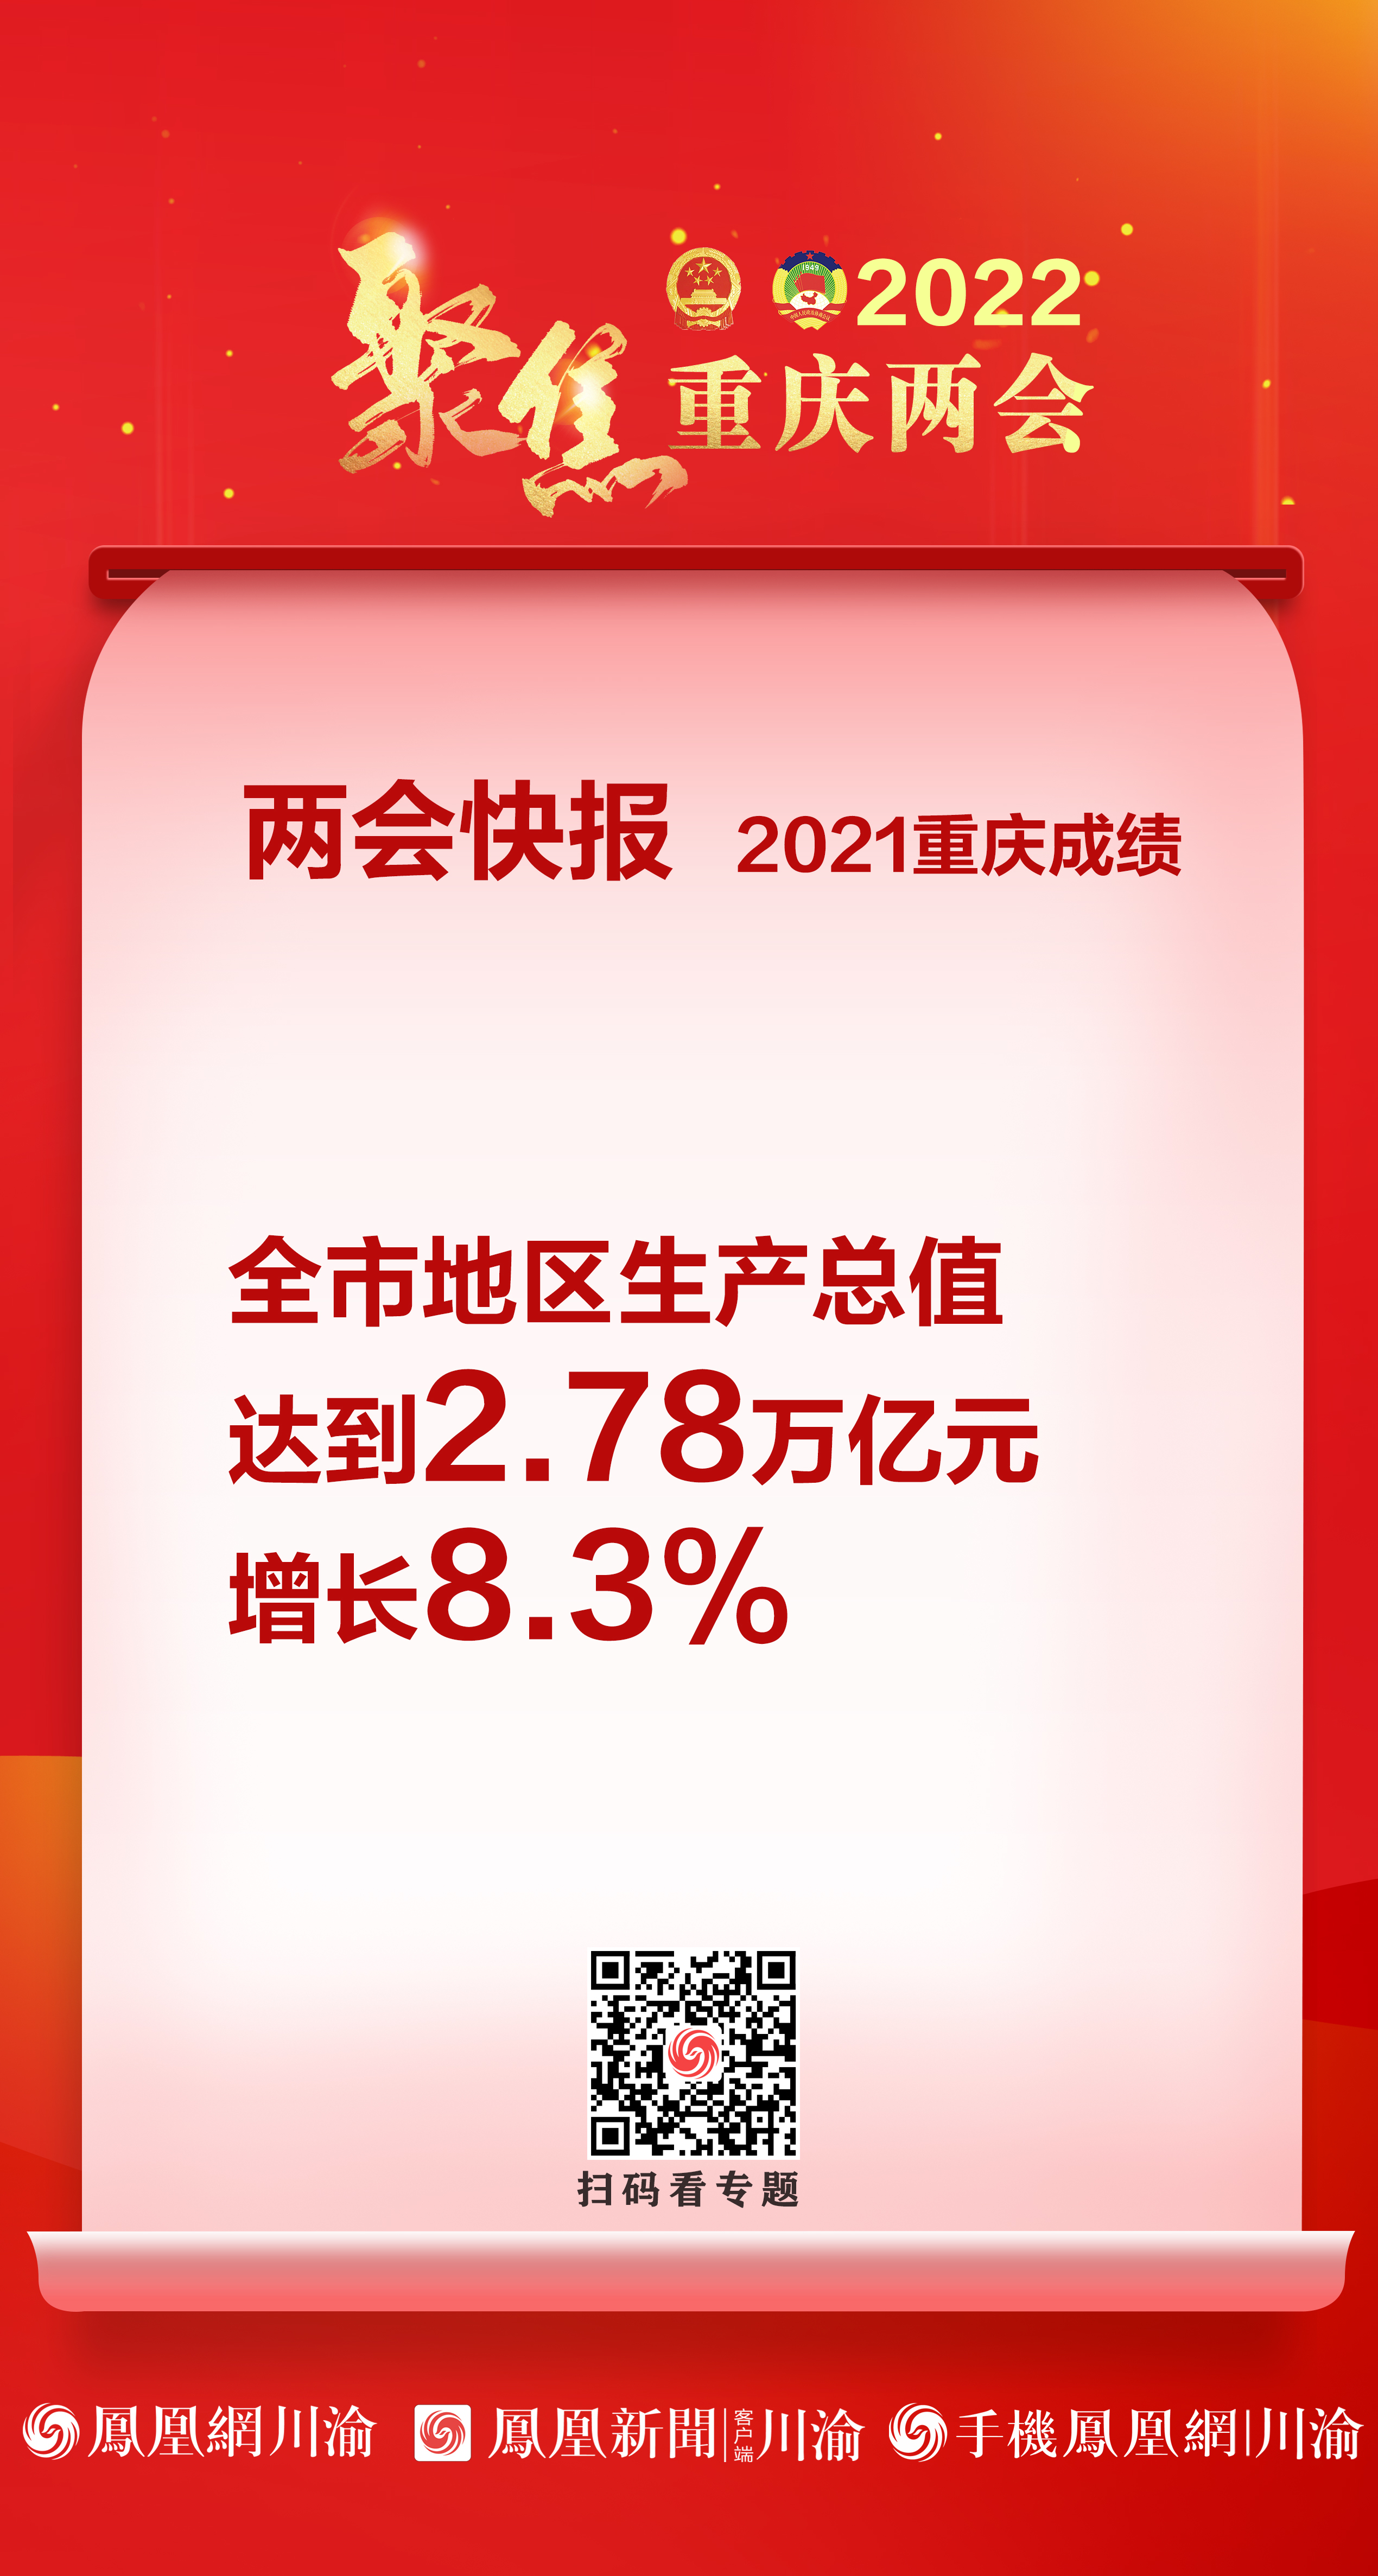 2021年重庆市地区生产总值达2.78万亿元 增长8.3%